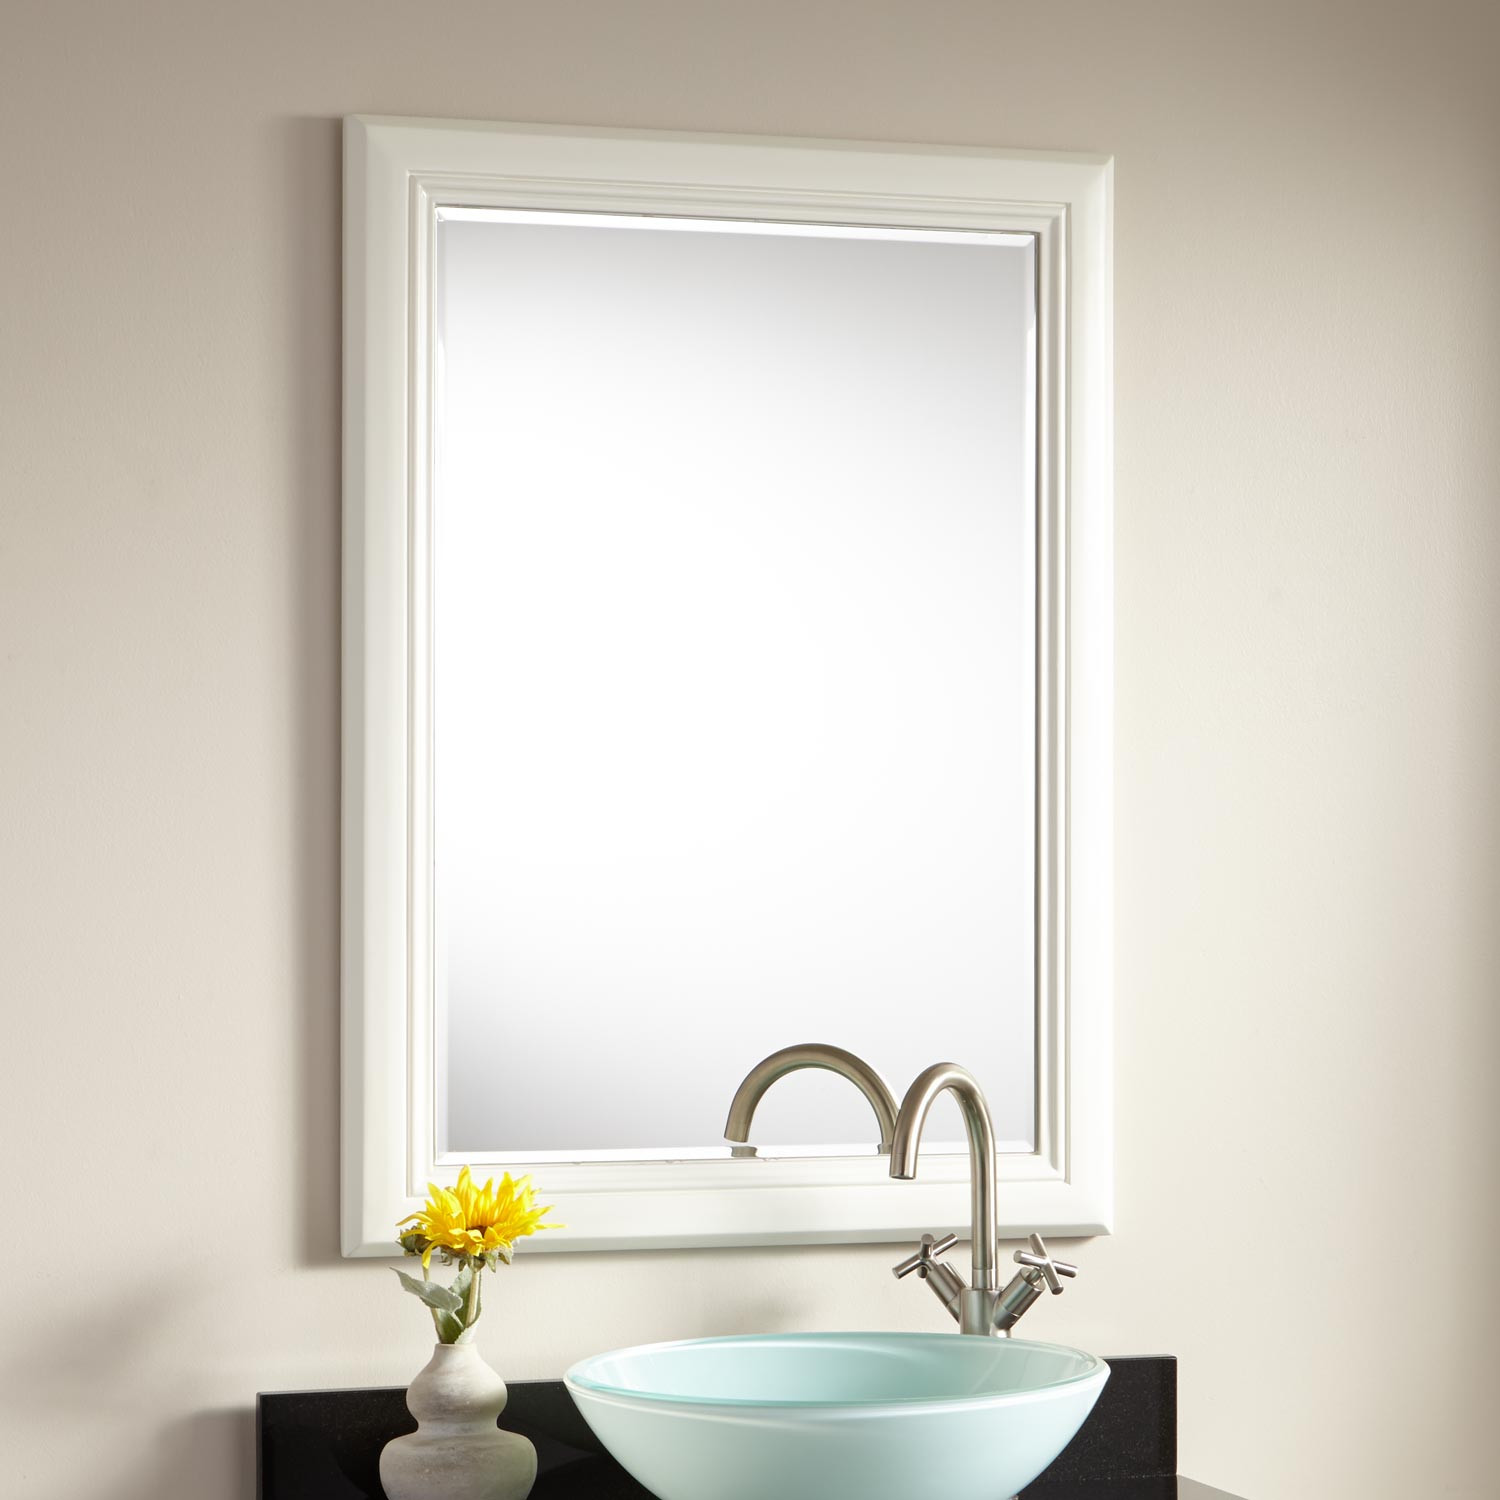 Double Vanity Mirrors For Bathroom
 26" Chapman Vanity Mirror White Bathroom